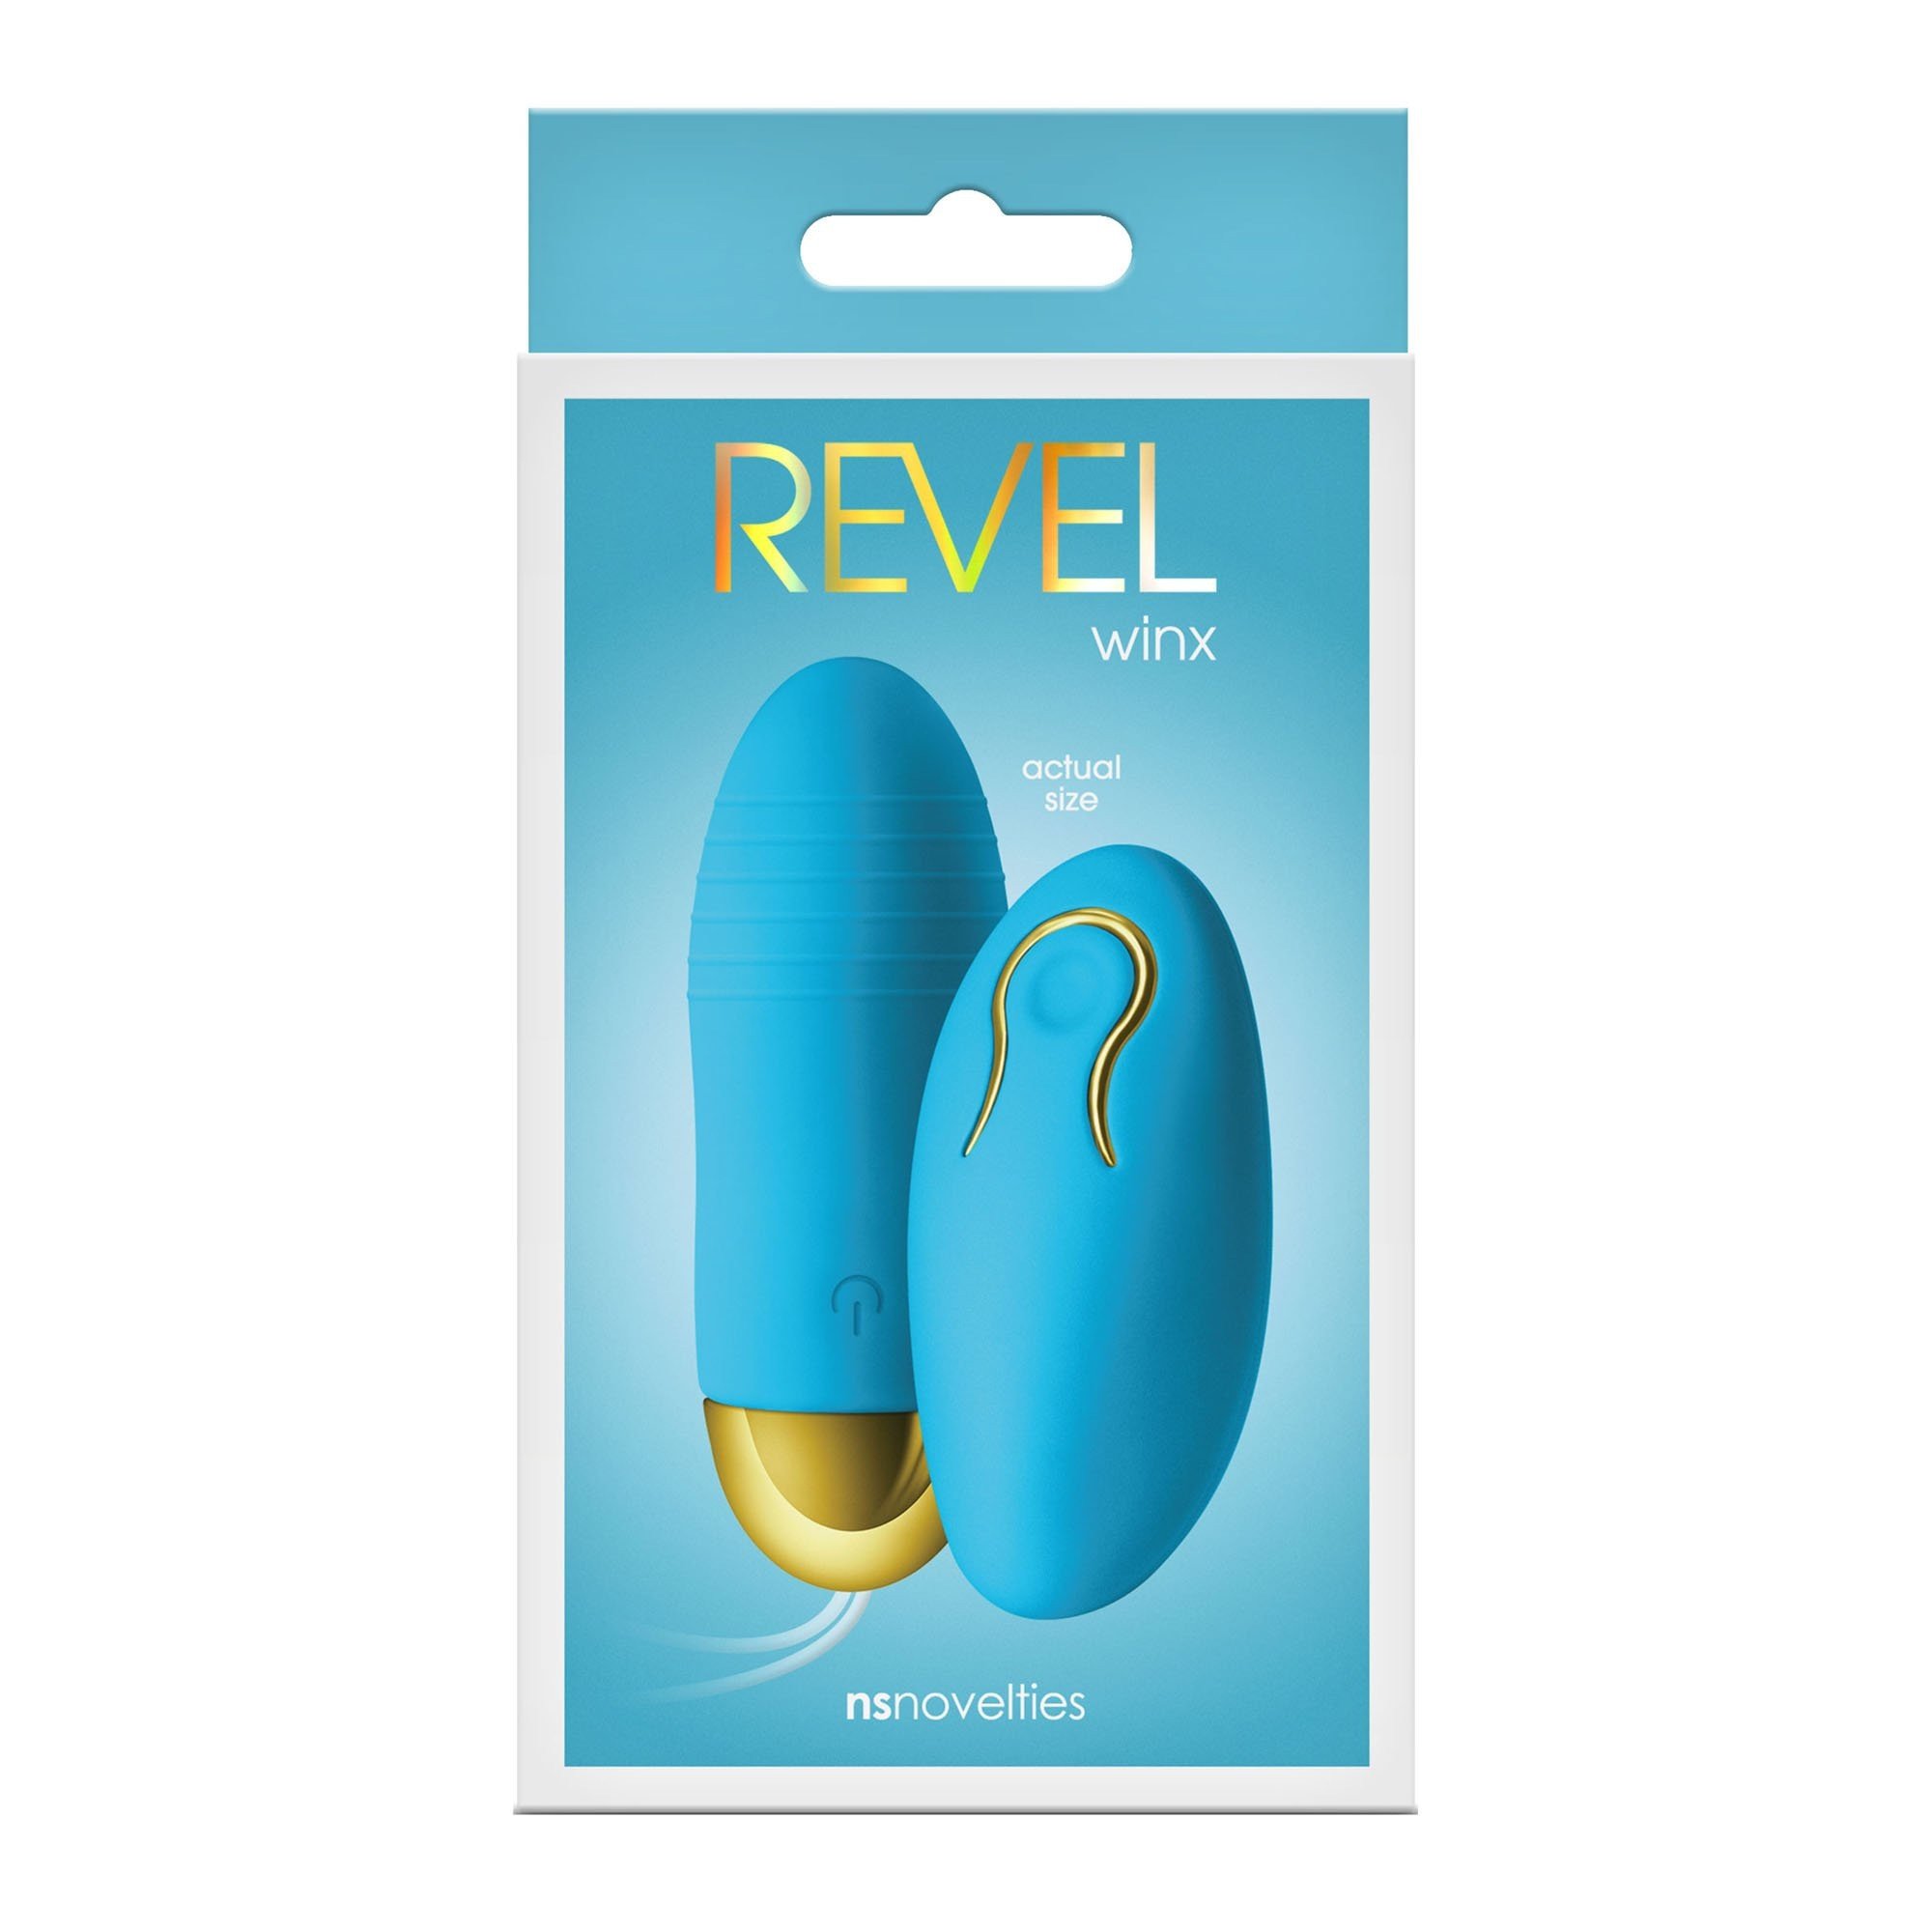 Vibruojantis kiaušinėlis „Revel Winx“ - NS Novelties